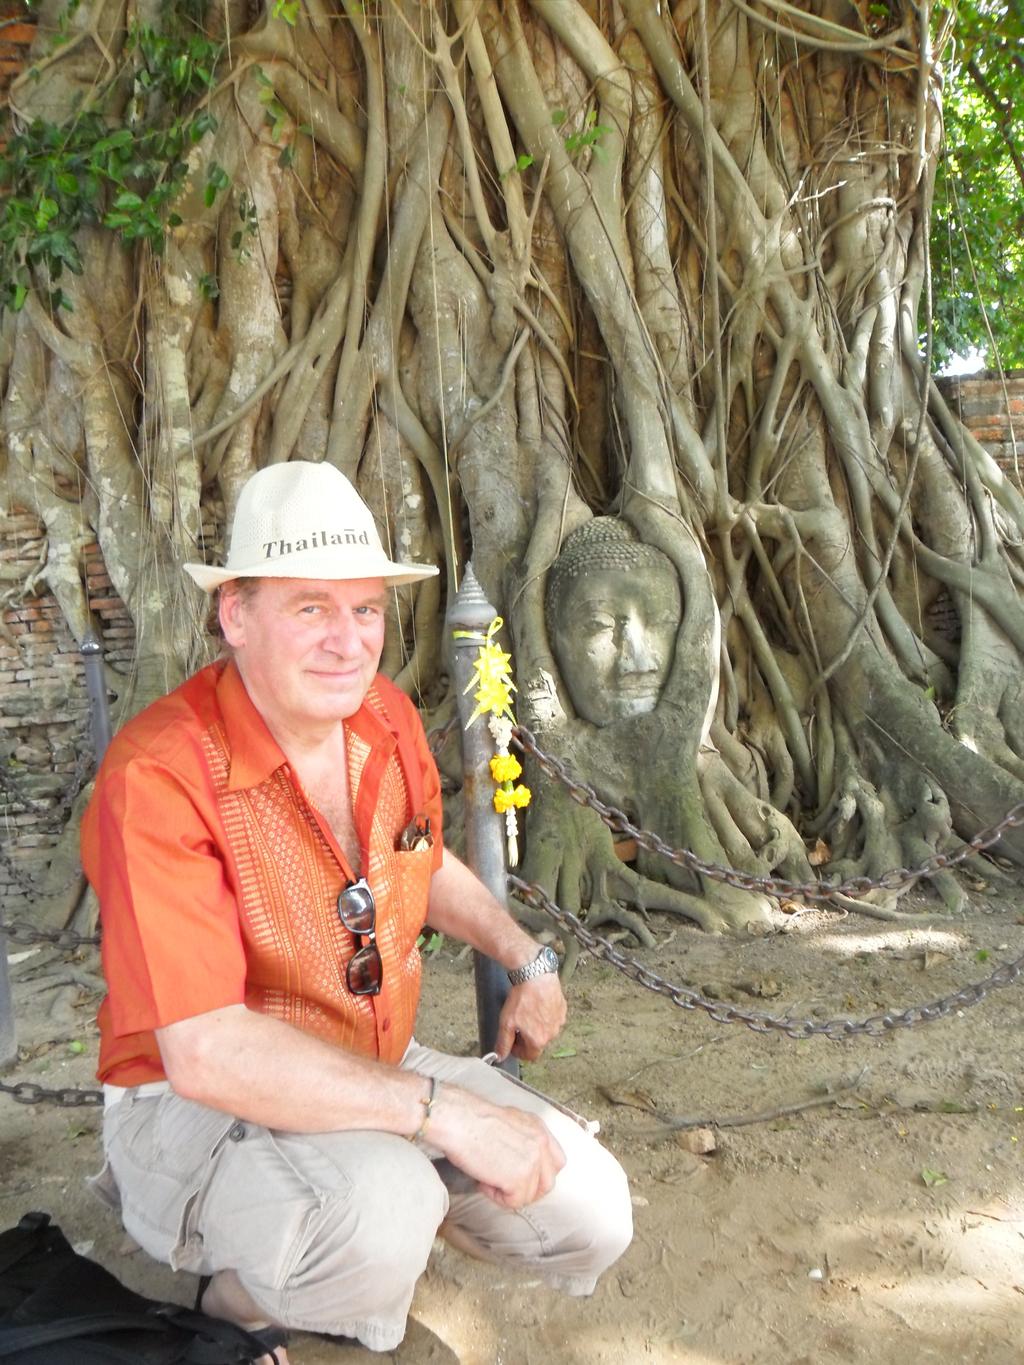 Den 5 till den 27 november så var jag i Thailand och reste runt i norra Thailand. Där besökte jag olika kloster/tempel.